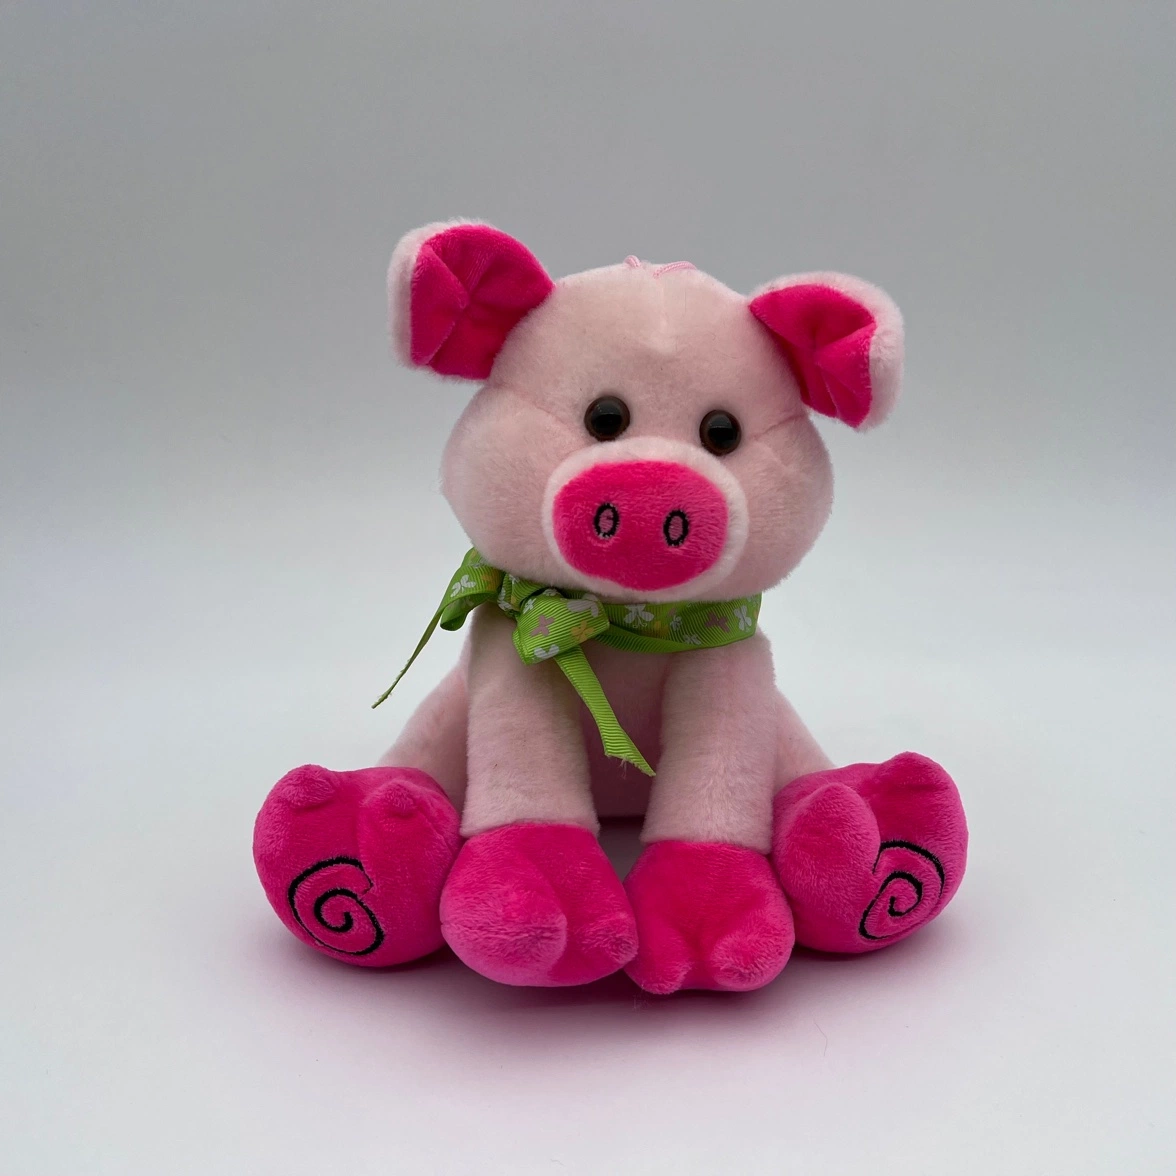 El cerdo muñeco de peluche Peluche acostado Piggy Juguete Blando Cojin almohada Plushie Animal niños bebé regalo consolador